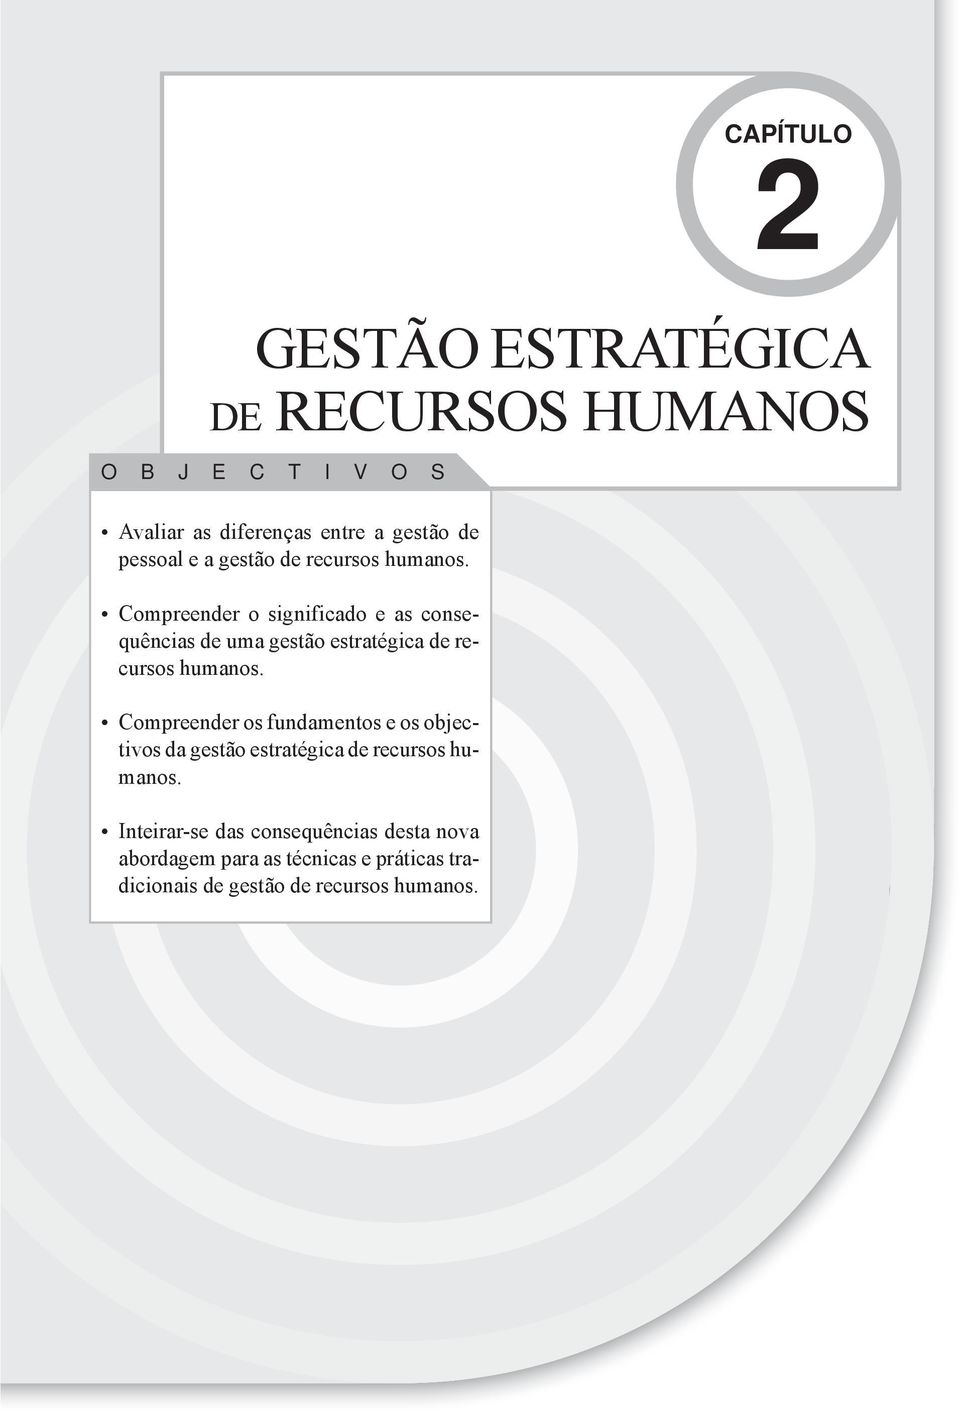 Compreender o significado e as consequências de uma gestão estratégica de recursos humanos.